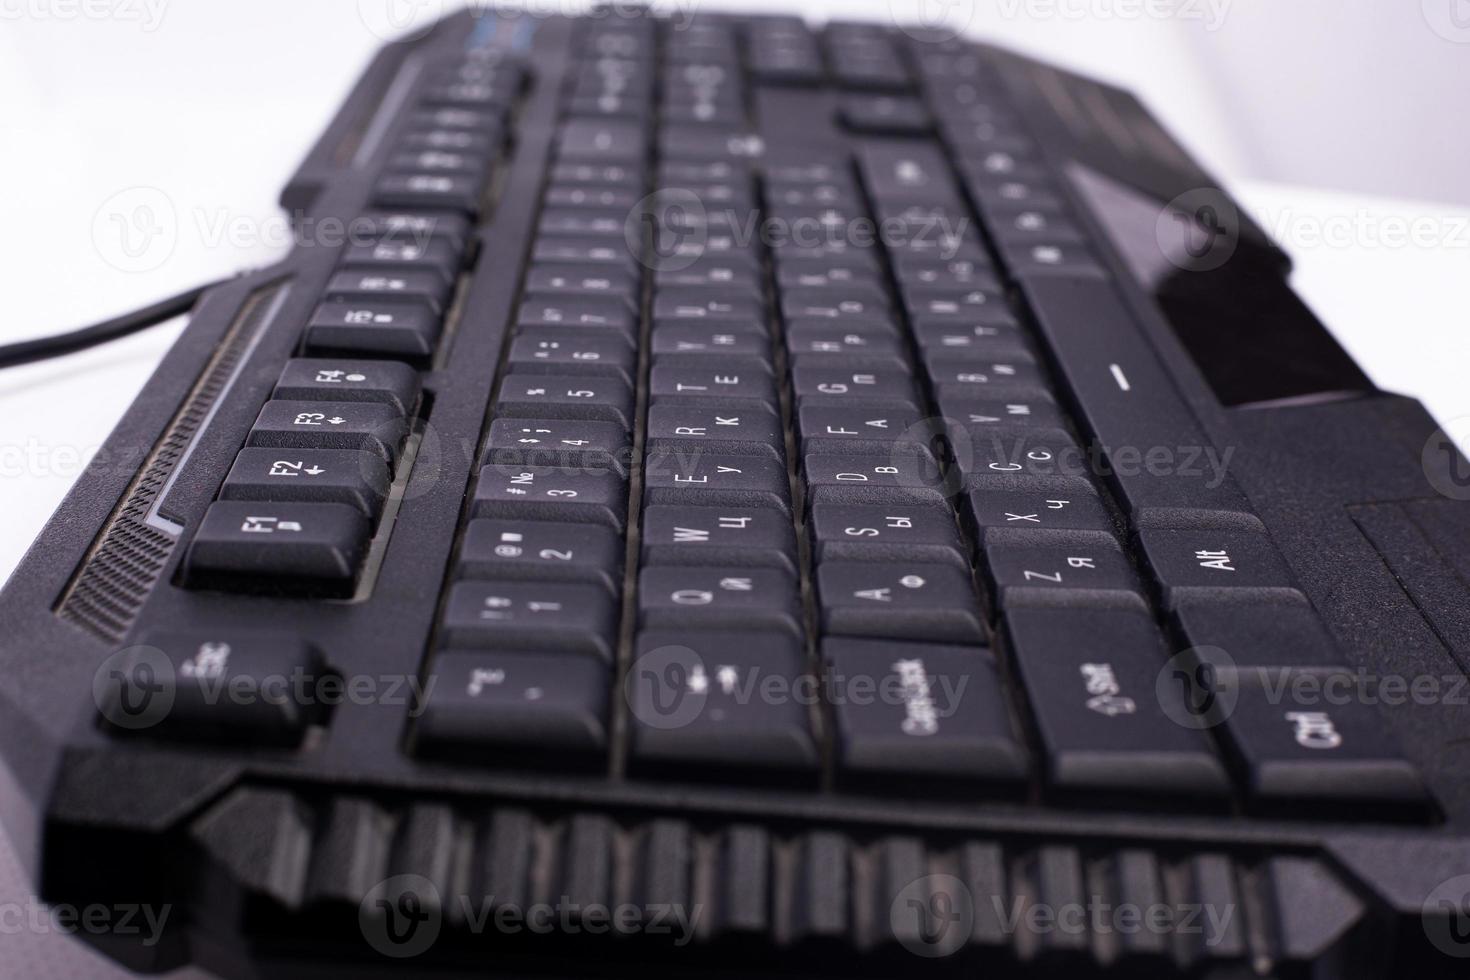 teclado preto do computador. dispositivo para mensagens em um computador foto